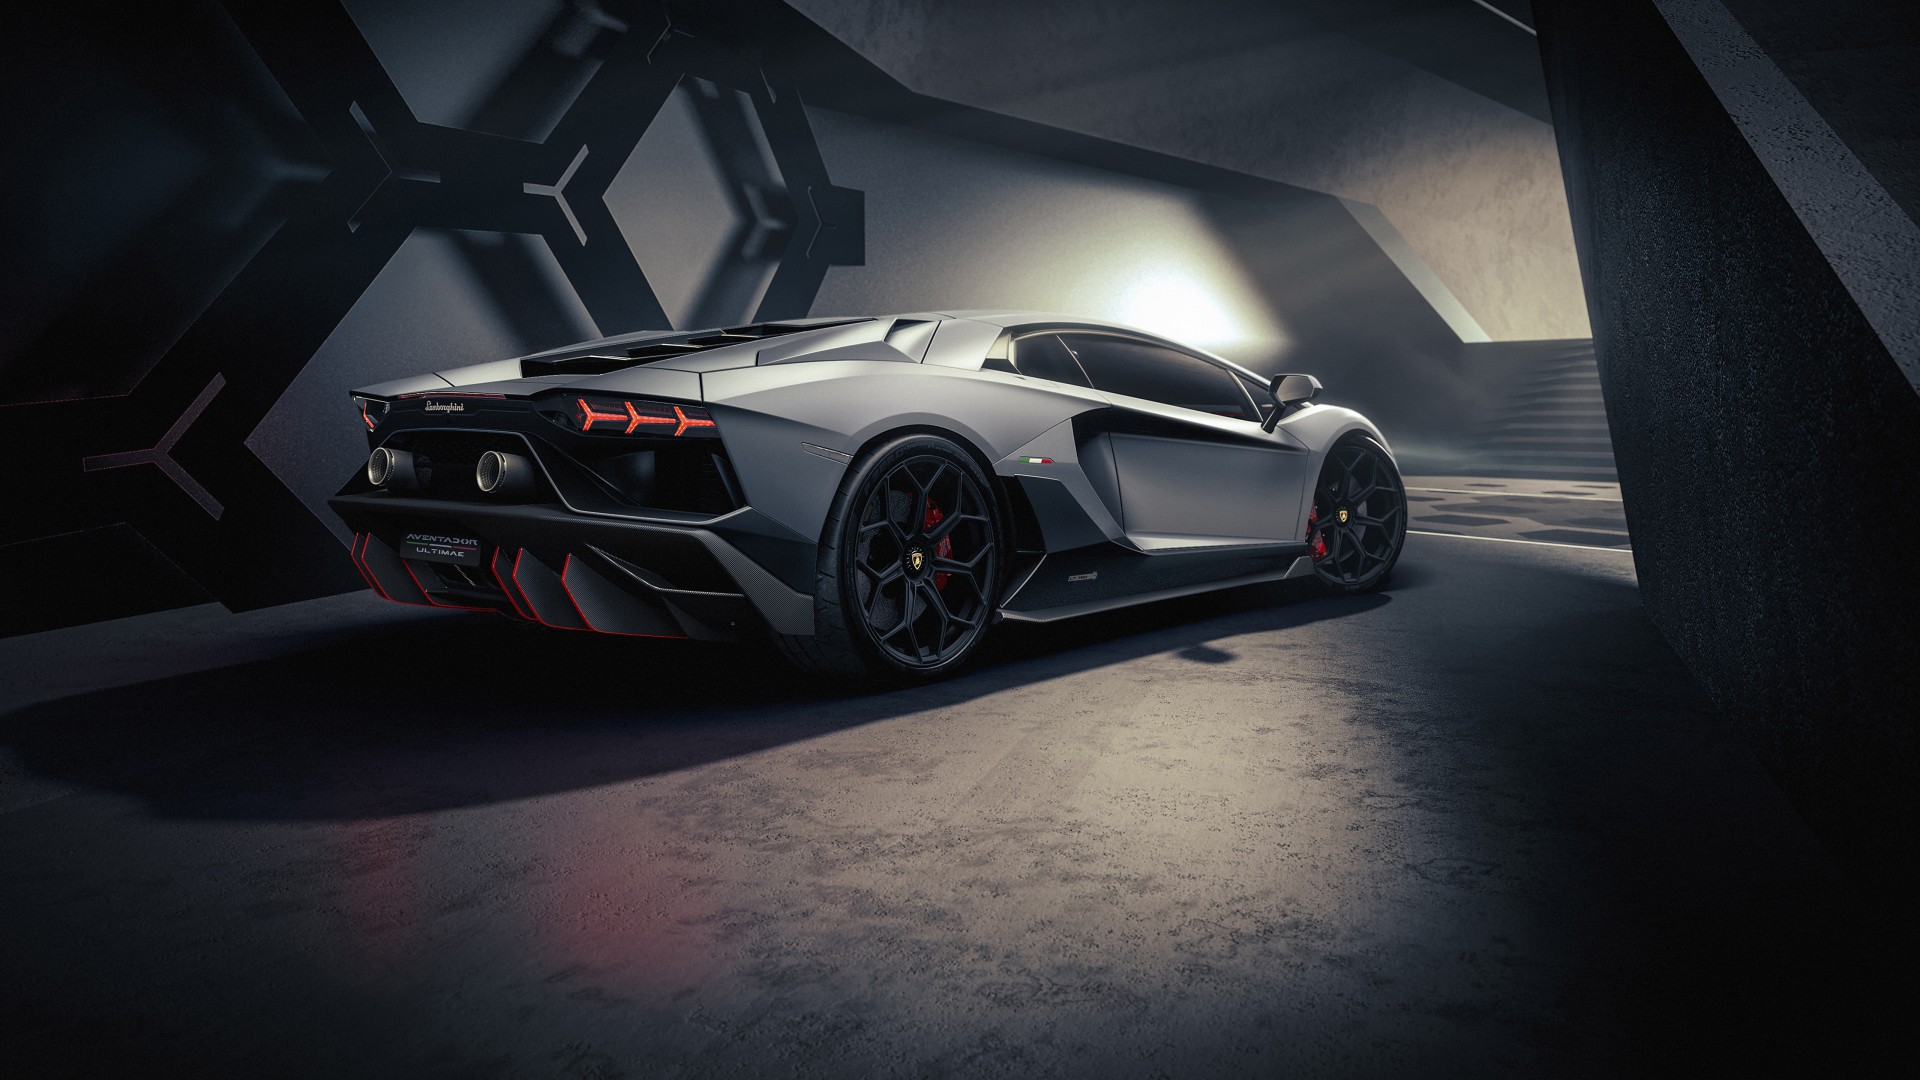 Kiêu hãnh, nổi bật và đầy sức mạnh, Lamborghini Aventador là một trong những siêu xe đỉnh cao của thế giới. Nếu bạn muốn thấy một tác phẩm nghệ thuật trên bánh xe, hãy xem ảnh về Lamborghini Aventador.